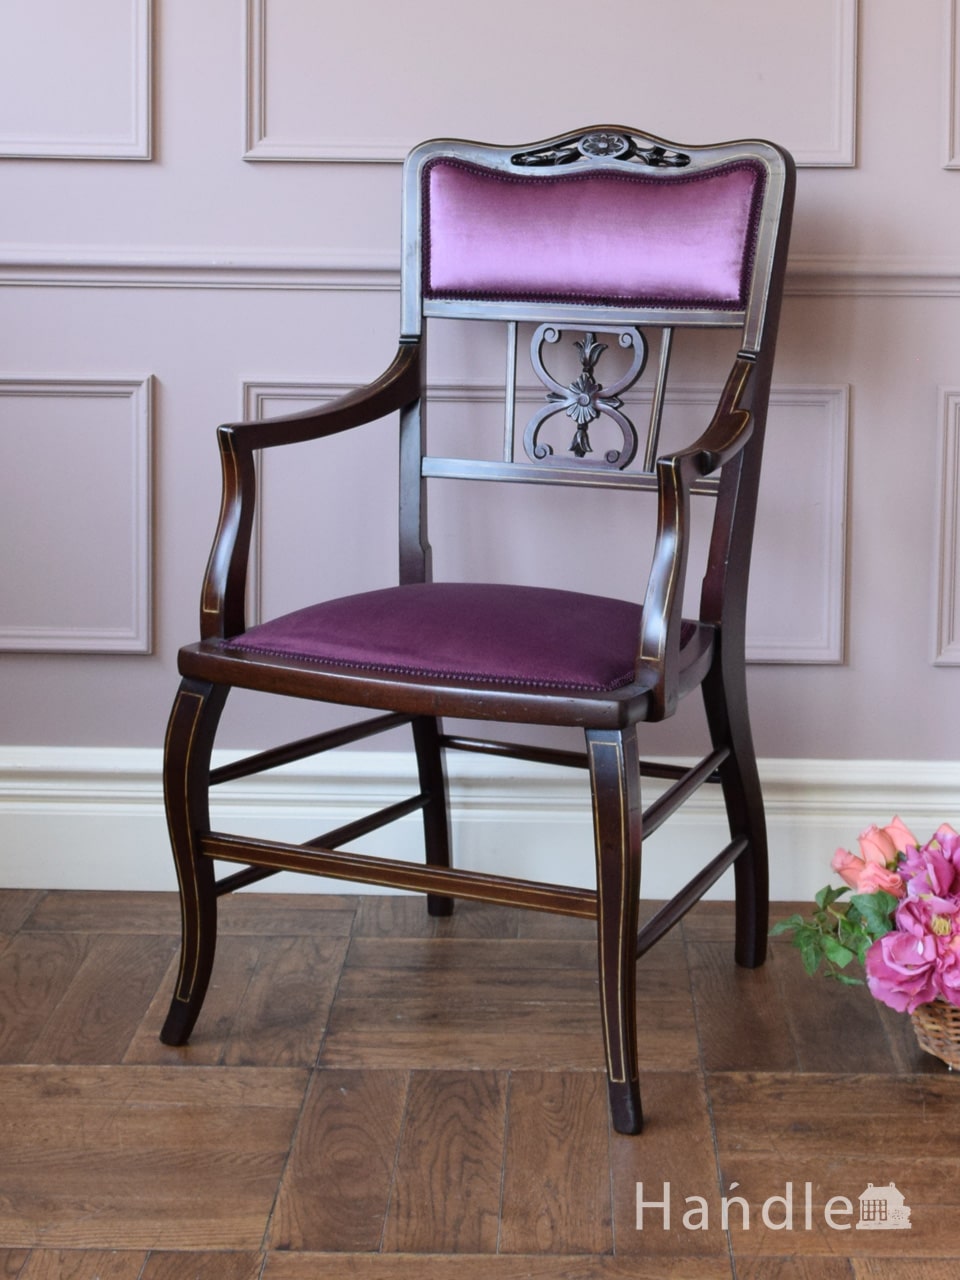 英国アンティークの美しいアーム付き椅子、透かし彫りの入ったサロンチェア (q-518-c)